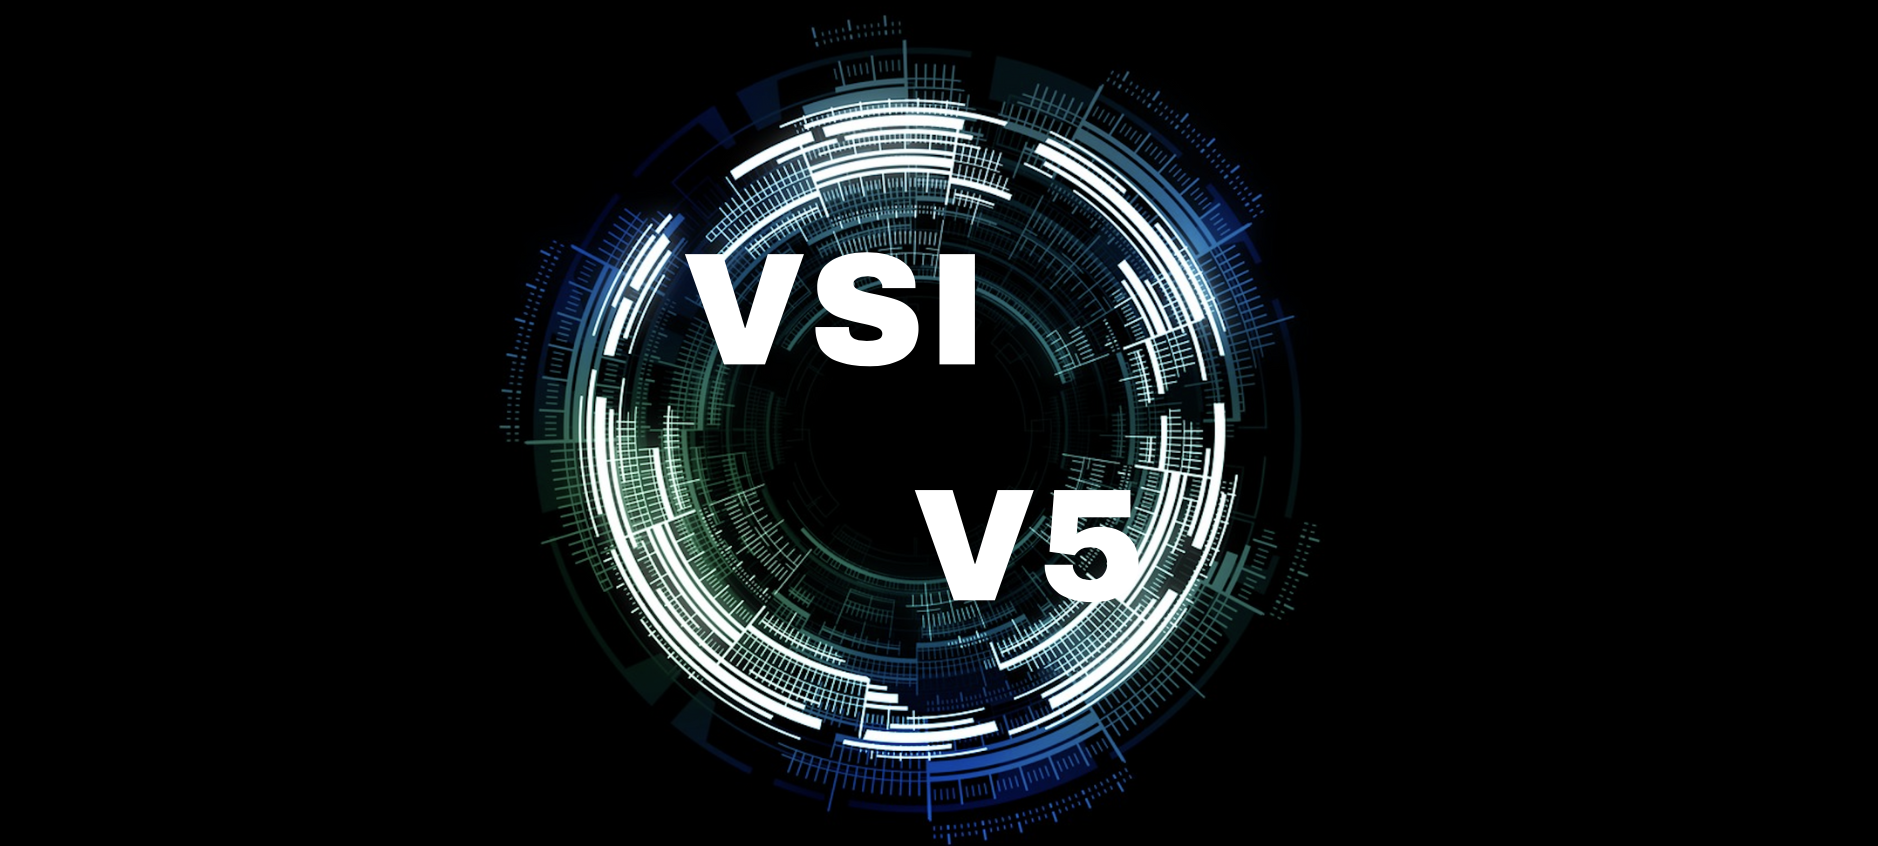 Navigating VSI V5